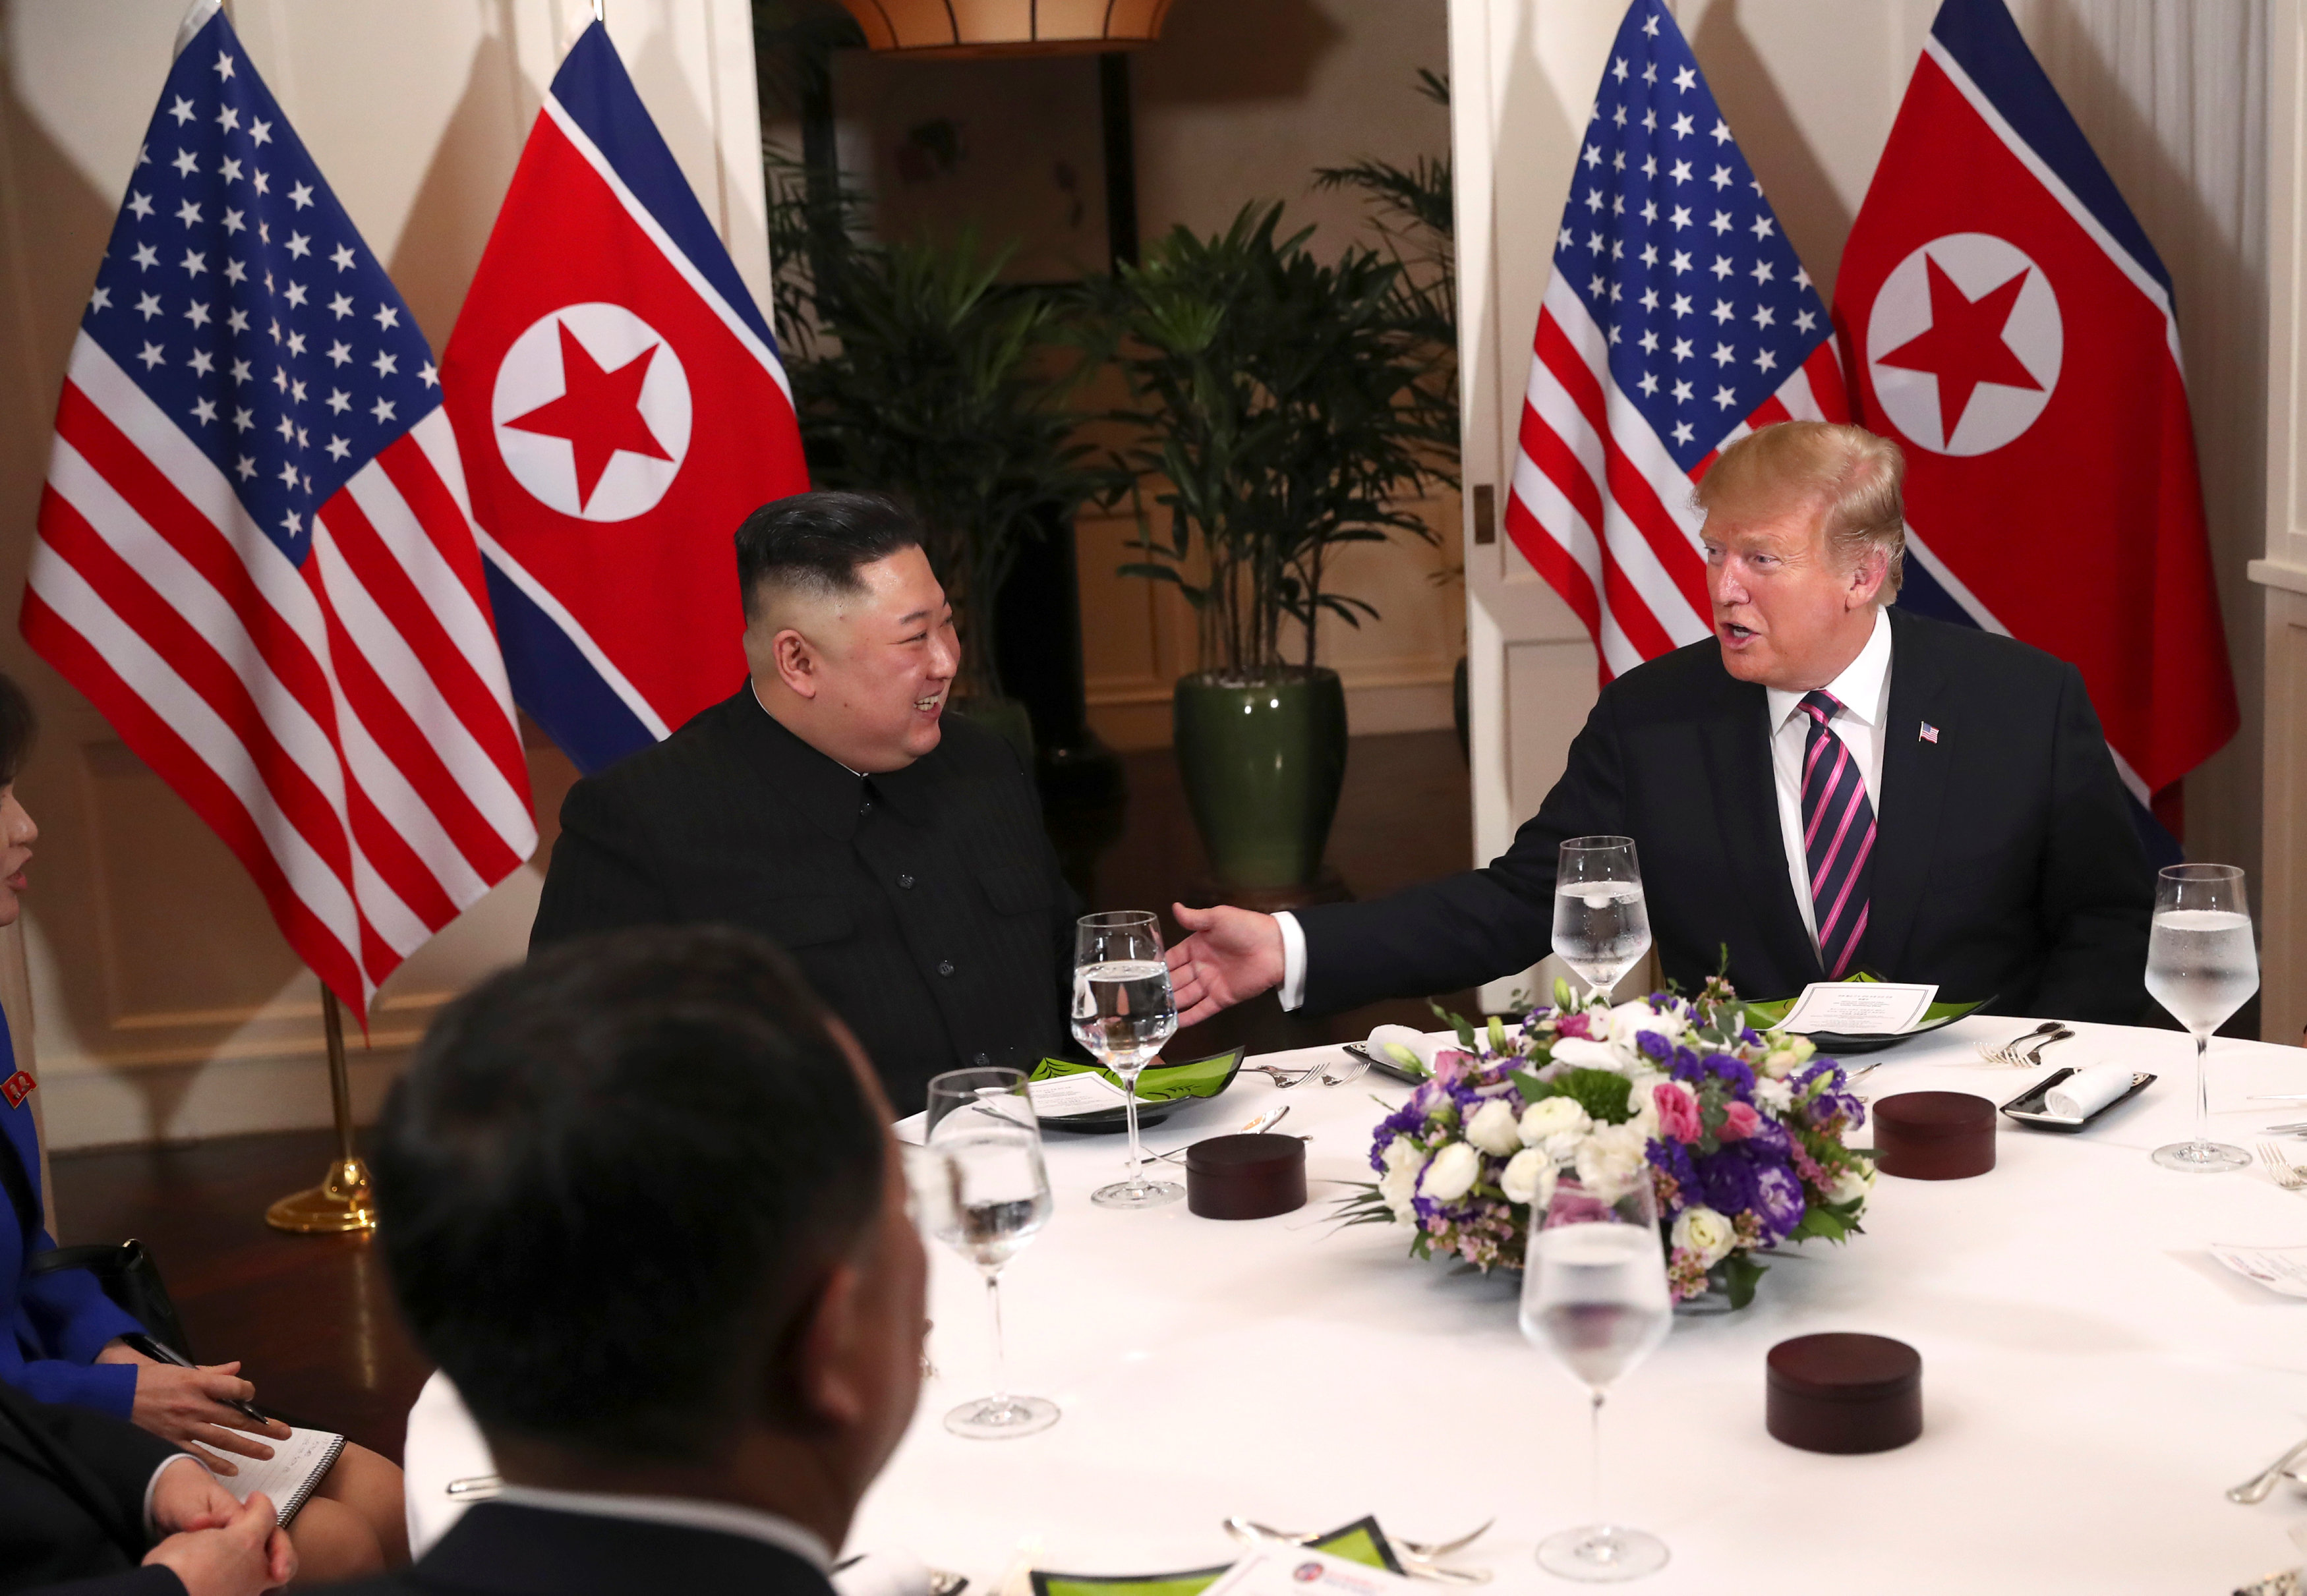 Corea del Norte “no desea” dialogar si EEUU no abandona su política hostil